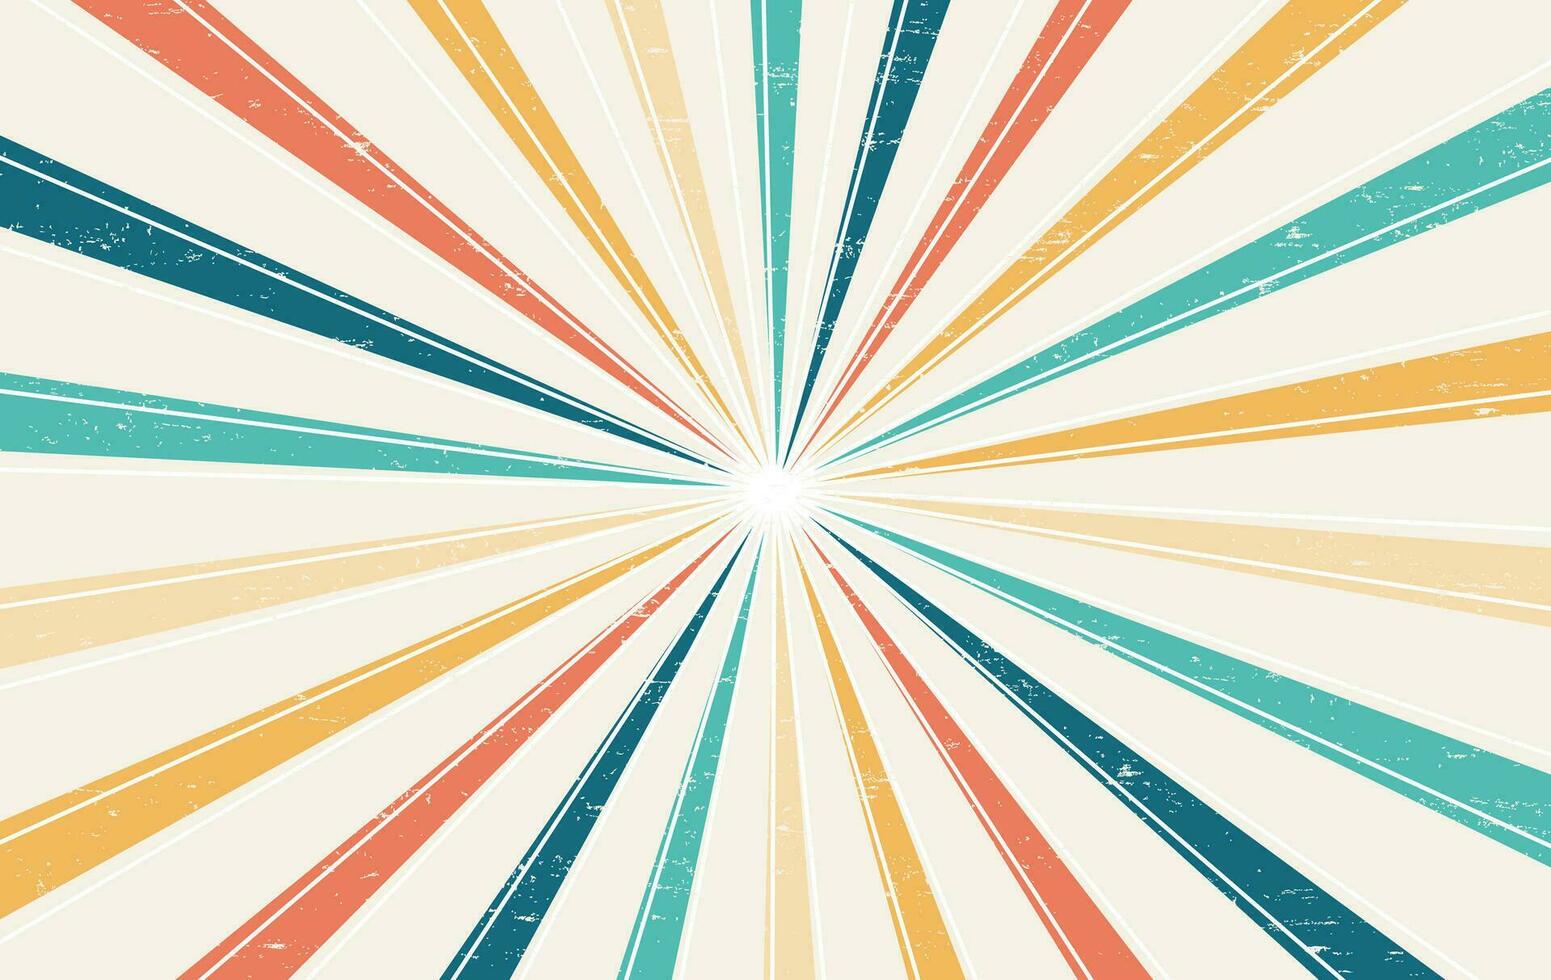 abstrakt bunt Jahrgang 60er Jahre und 70er Jahre Hippie retro minimal stilvoll Sonne und Regenbogen Strudel Muster Hintergrund Hintergrund von Regenbogen groovig wellig Linie Design mit schmutzig Textur. vektor